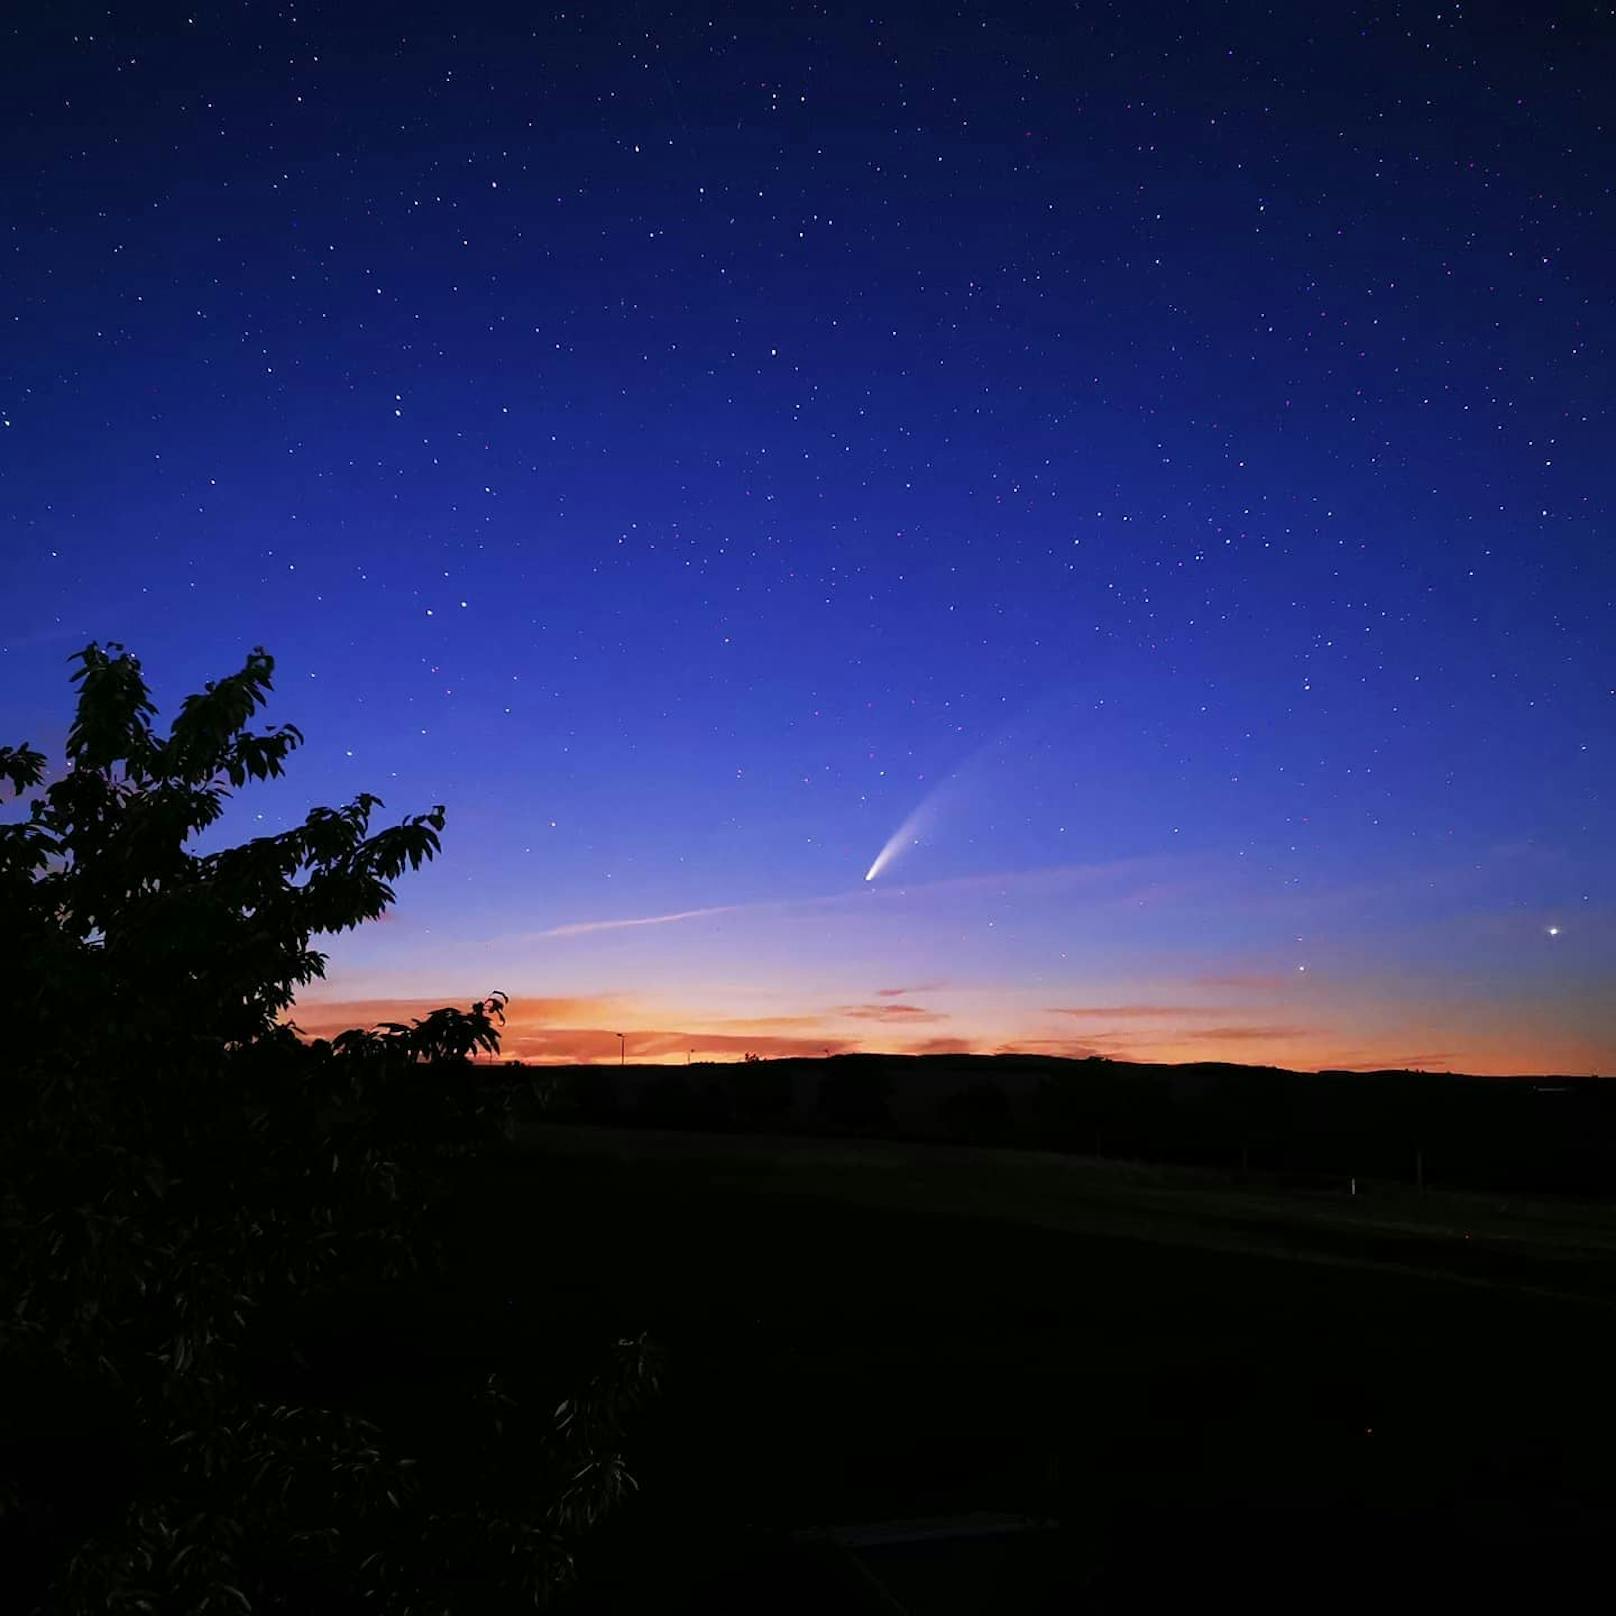 Komet "Neowise" zischt über Österreichs Himmel